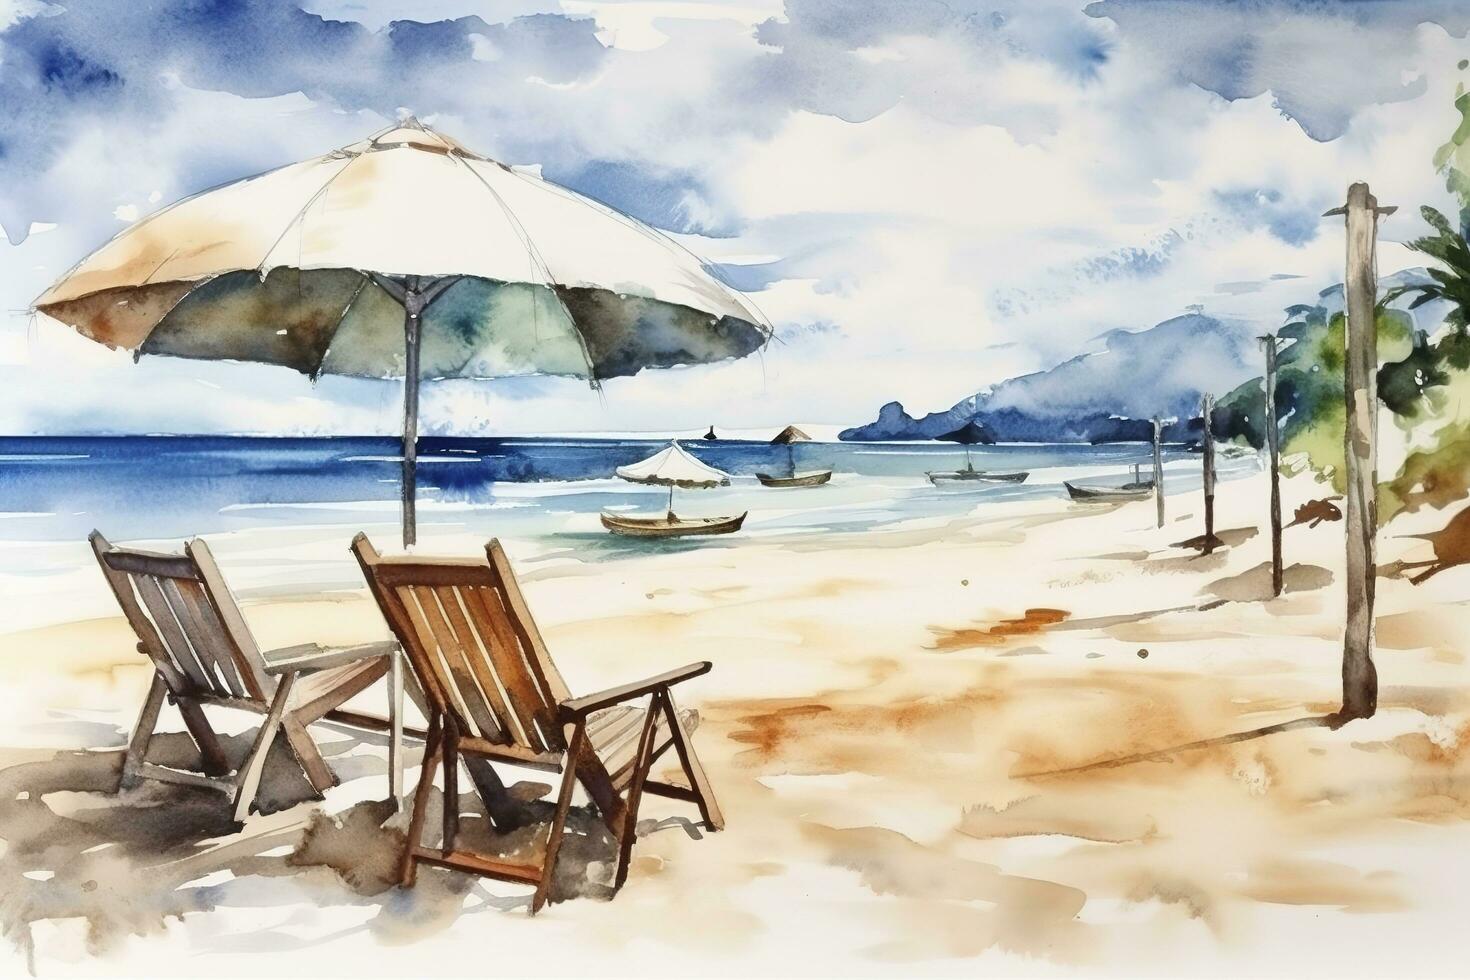 skön strand baner. vit sand, stolar, och paraply resa turism bred panorama bakgrund begrepp. Fantastisk strand vattenfärg landskap vattenfärg målning, generera ai foto